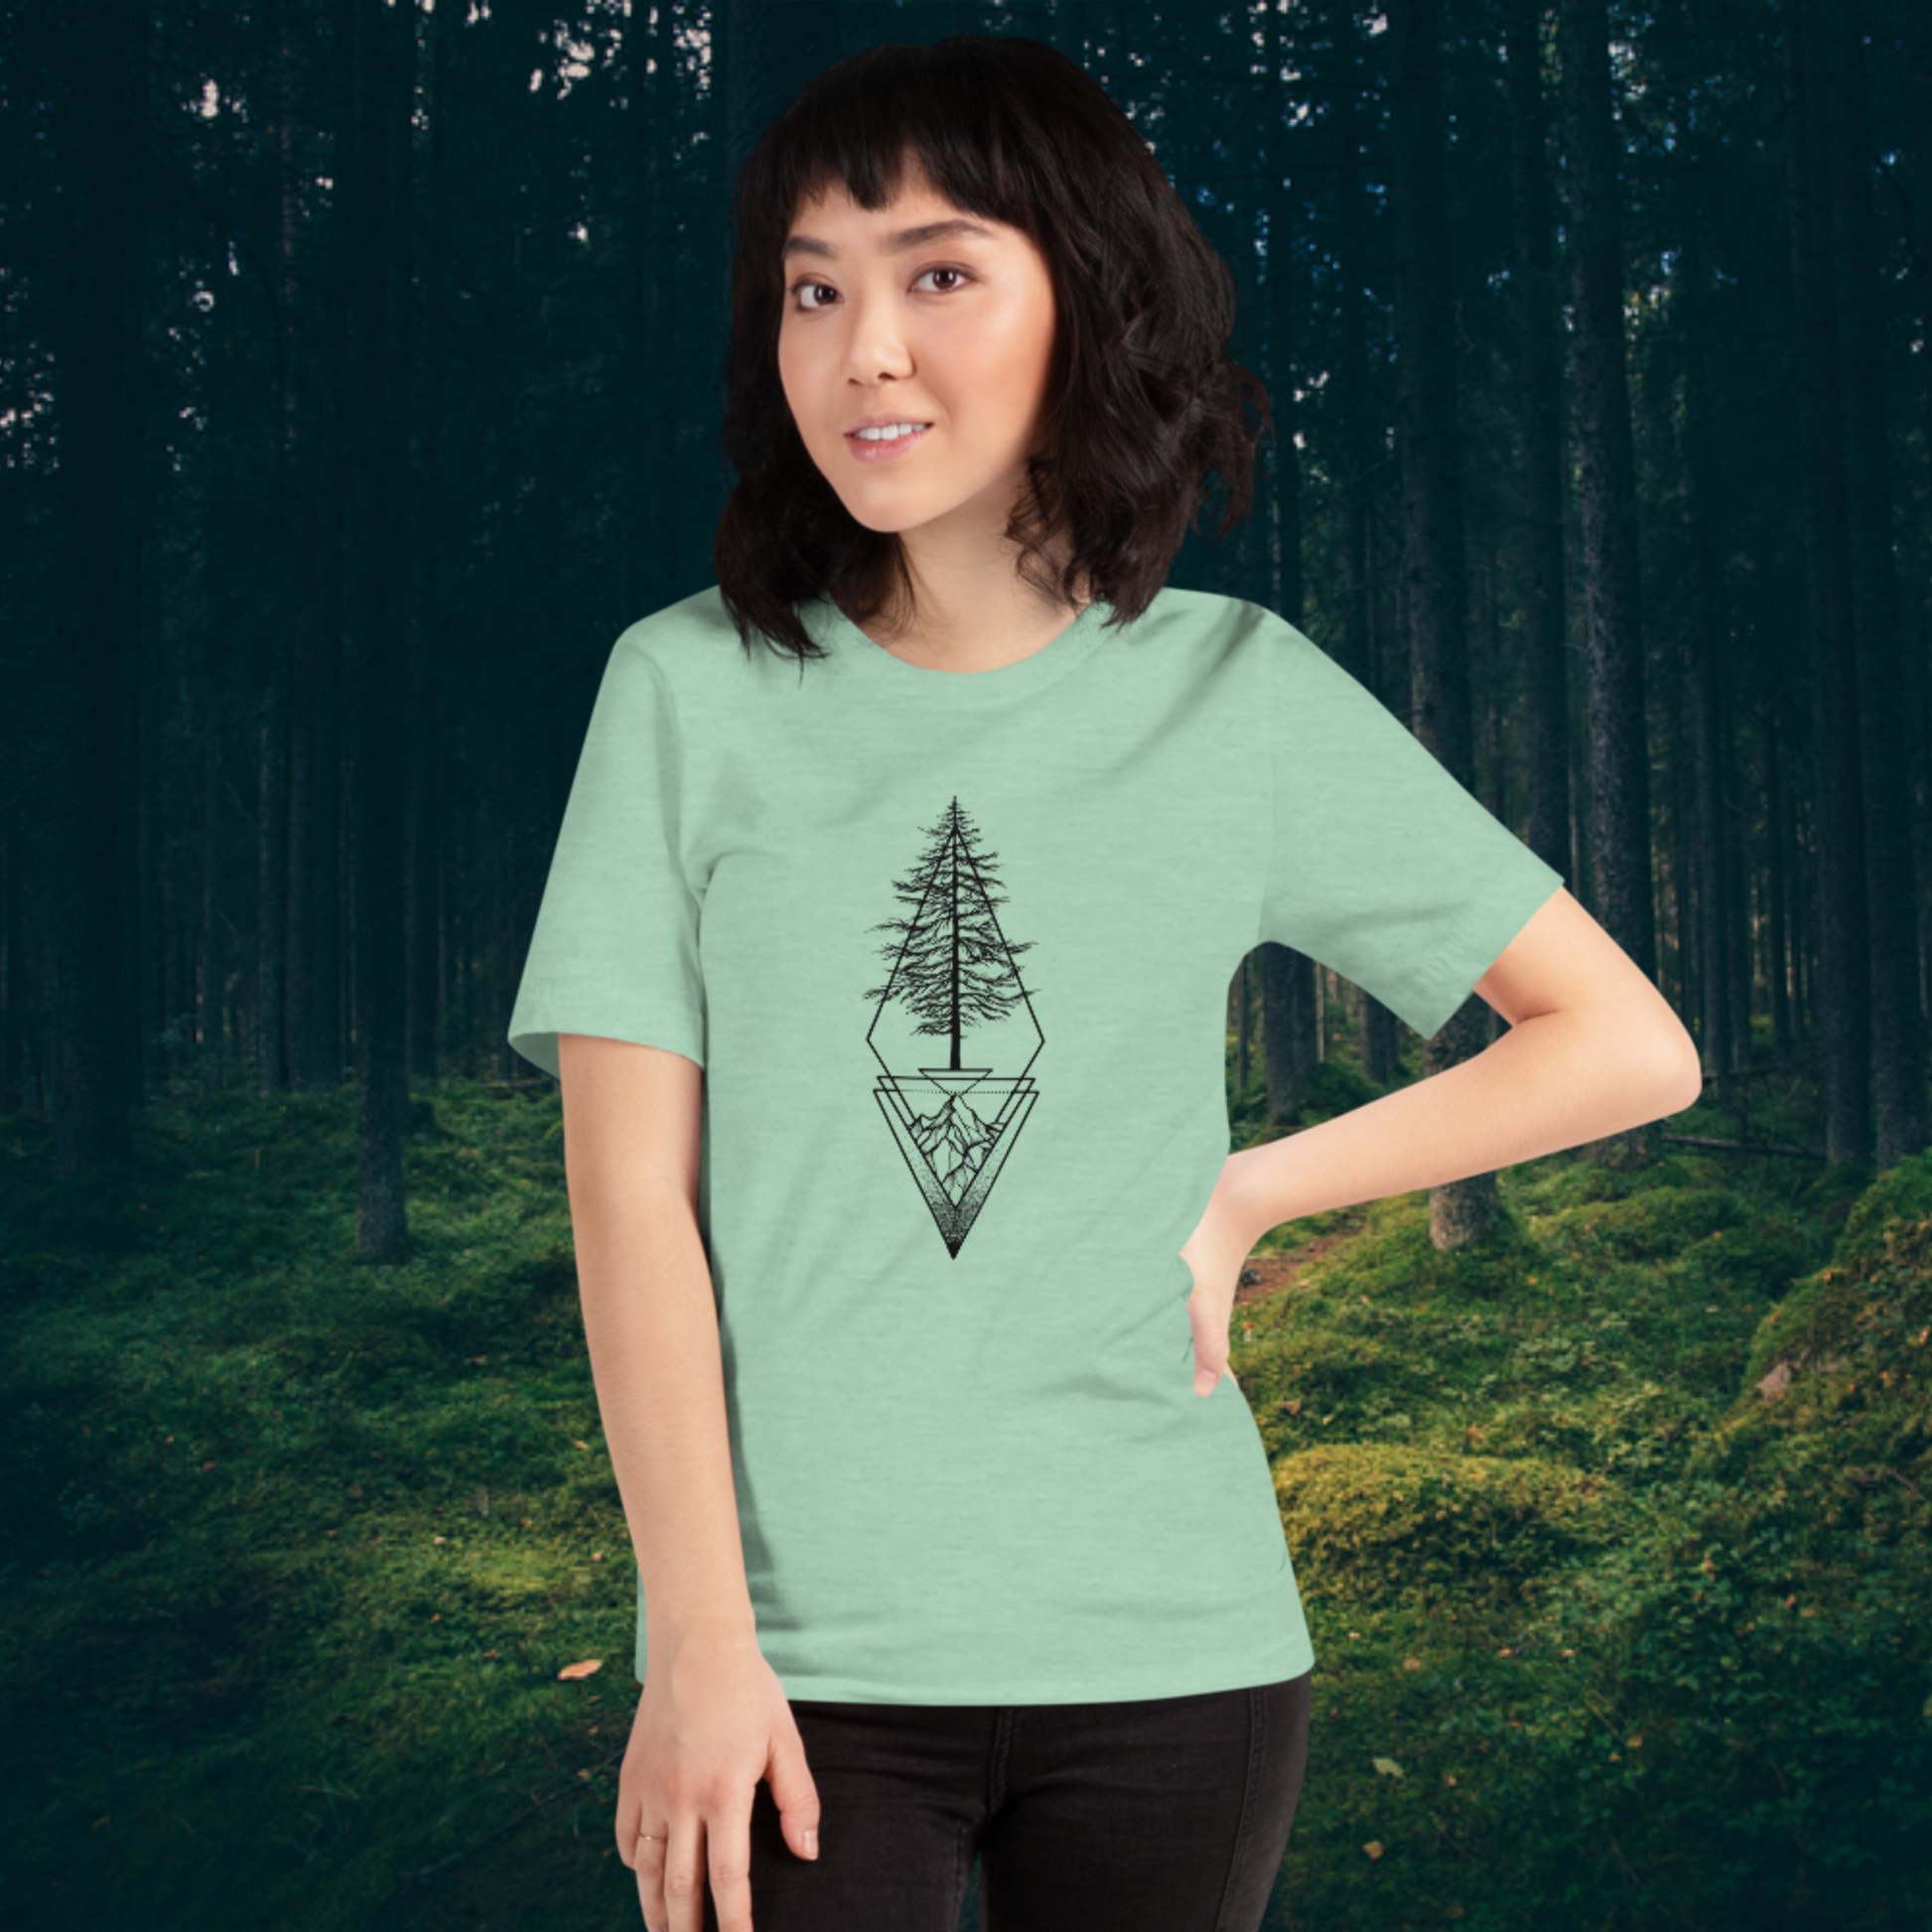 Mountain Shirt, Shirts for Women, Womens Shirts, Graphic Tee